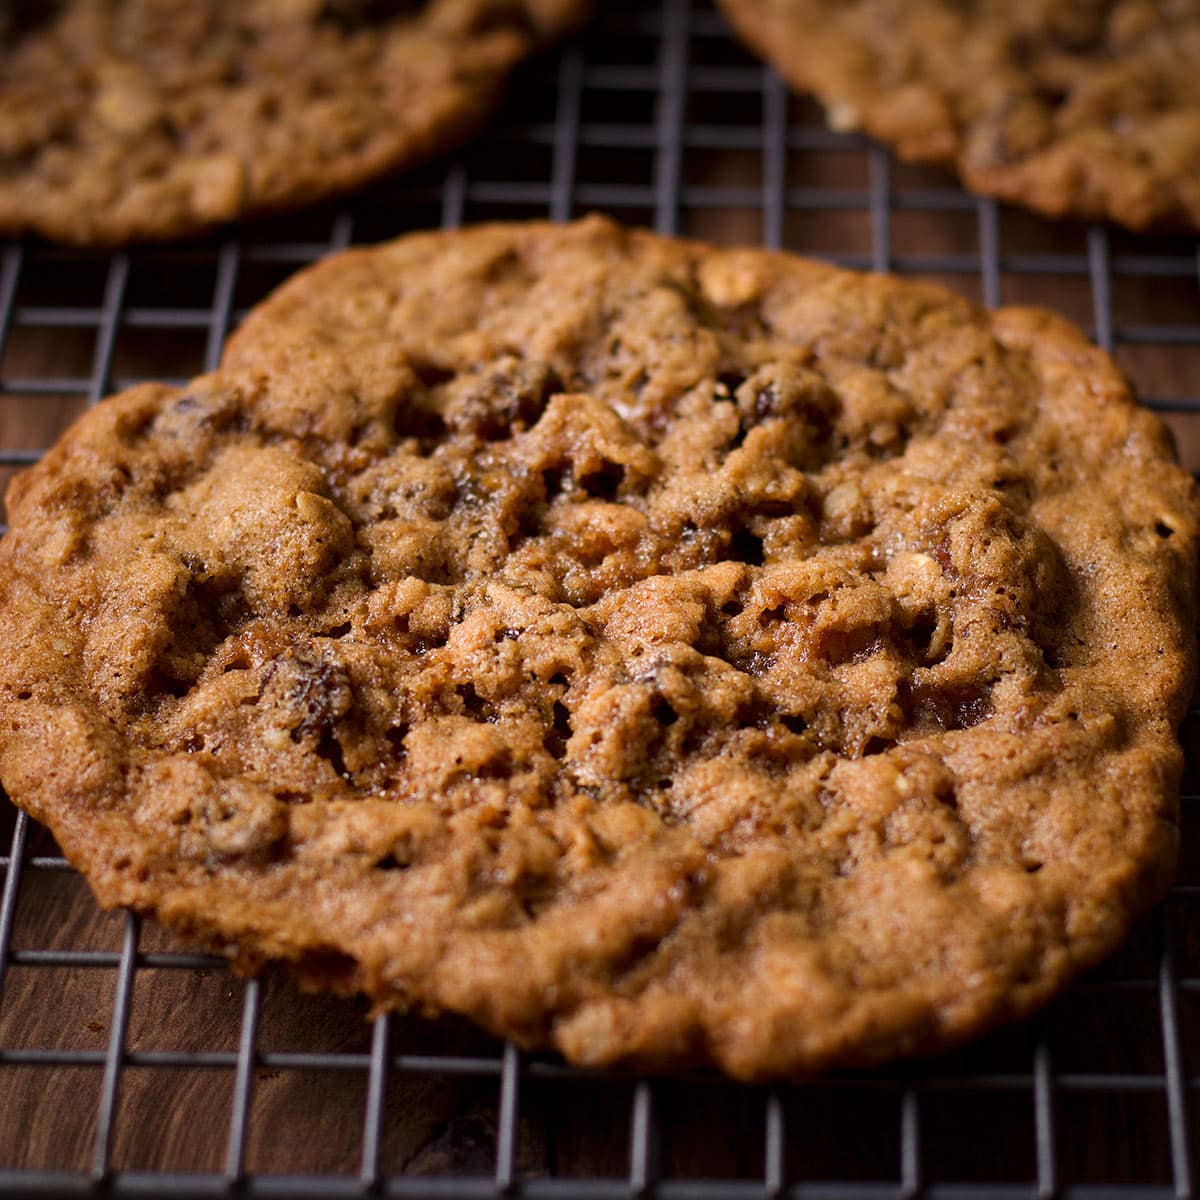 https://ofbatteranddough.com/wp-content/uploads/2018/01/1200-Oatmeal-raisin-cookies-9.jpg